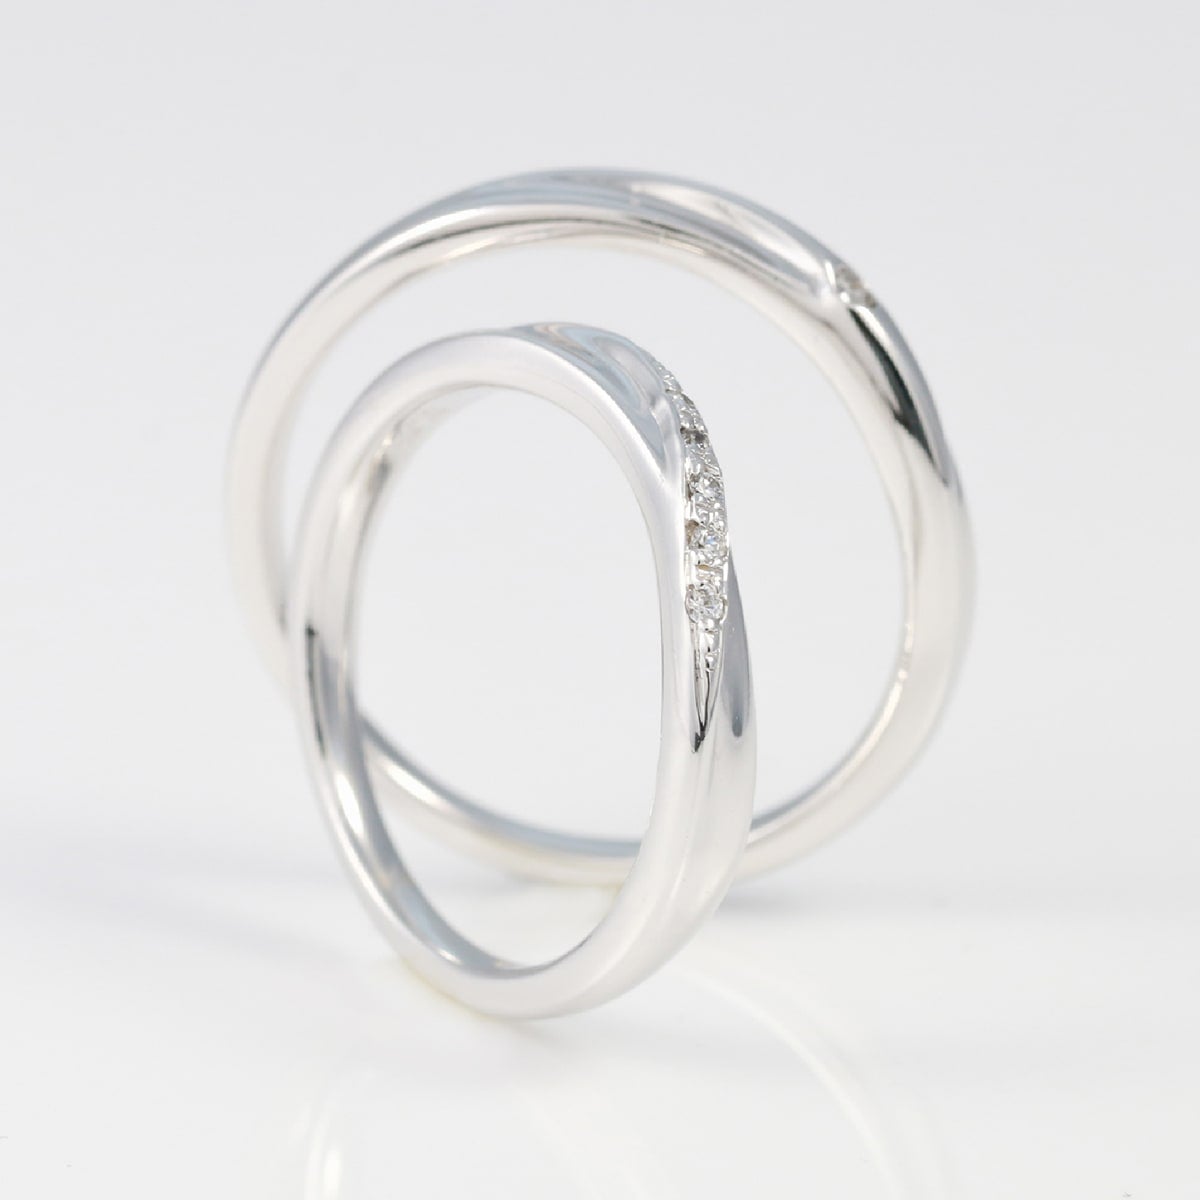 結婚指輪 ダイヤモンド 2本セット | 32545-32544